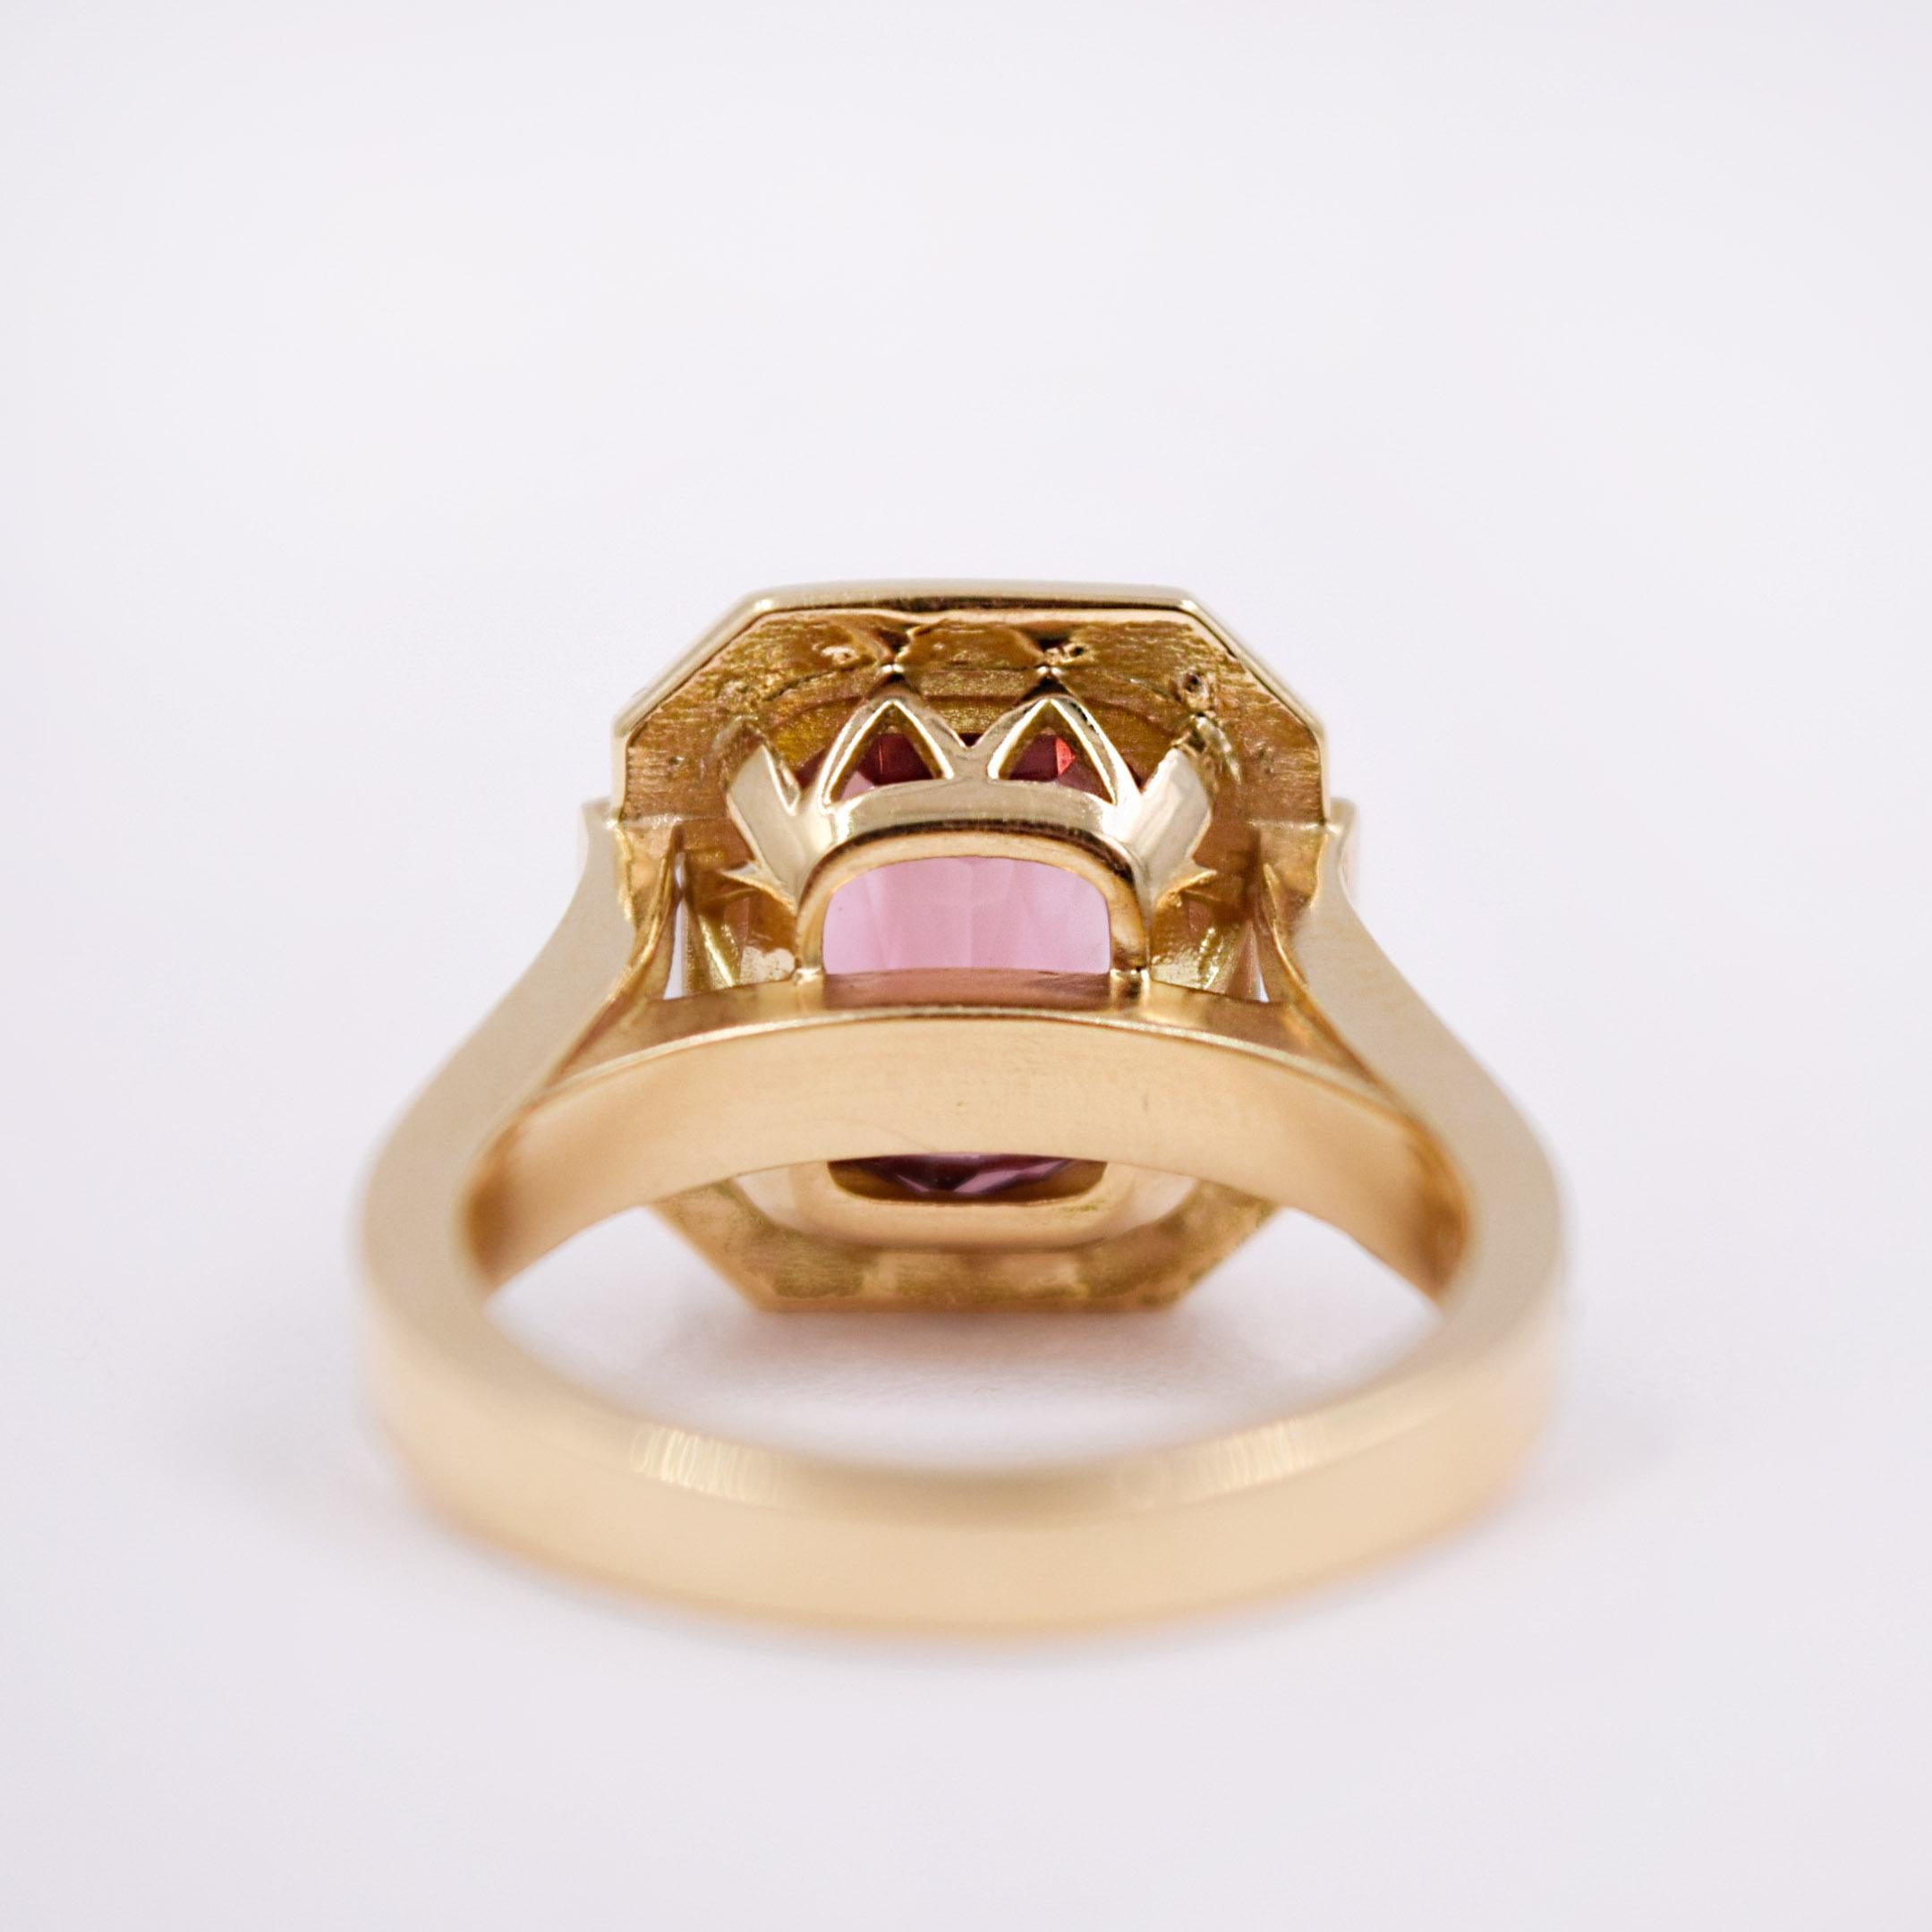 3.34 Carat Pink Tourmaline and White Diamond Statement Ring in 18 Karat Gold 2